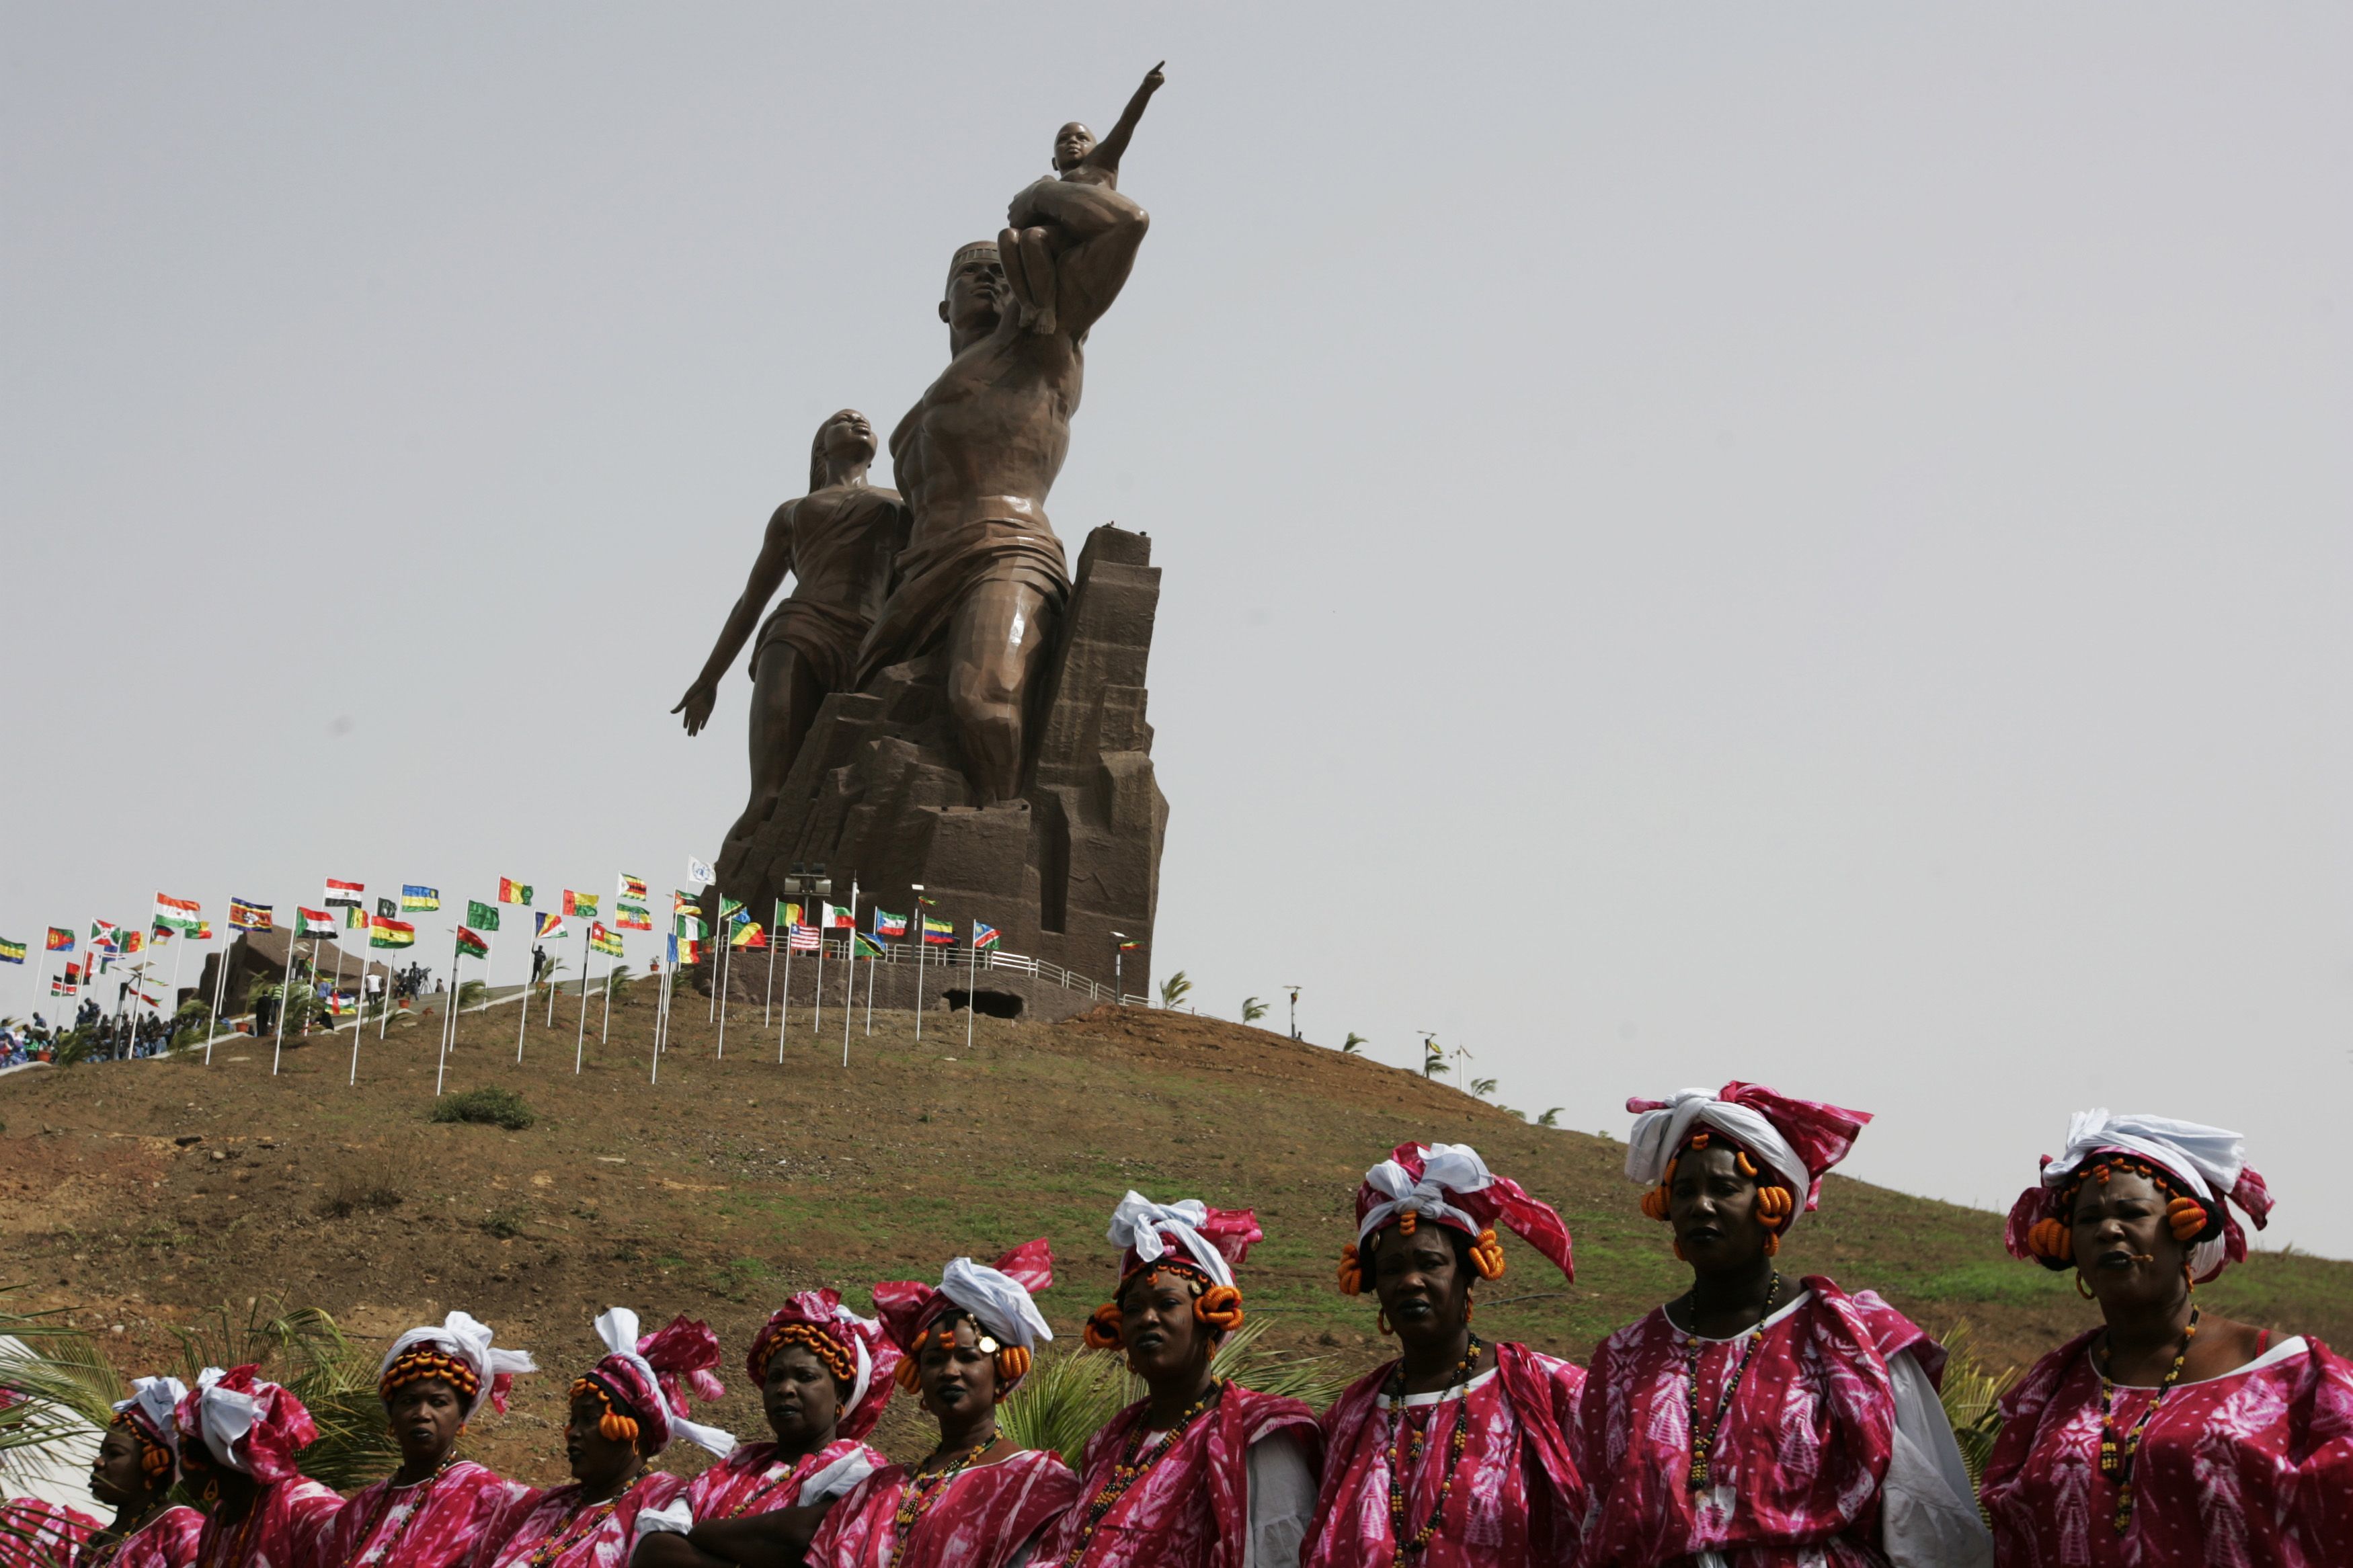 Μνημείο “μεγαλύτερο από το άγαλμα της Ελευθερίας” εγκαινιάστηκε στην Αφρική